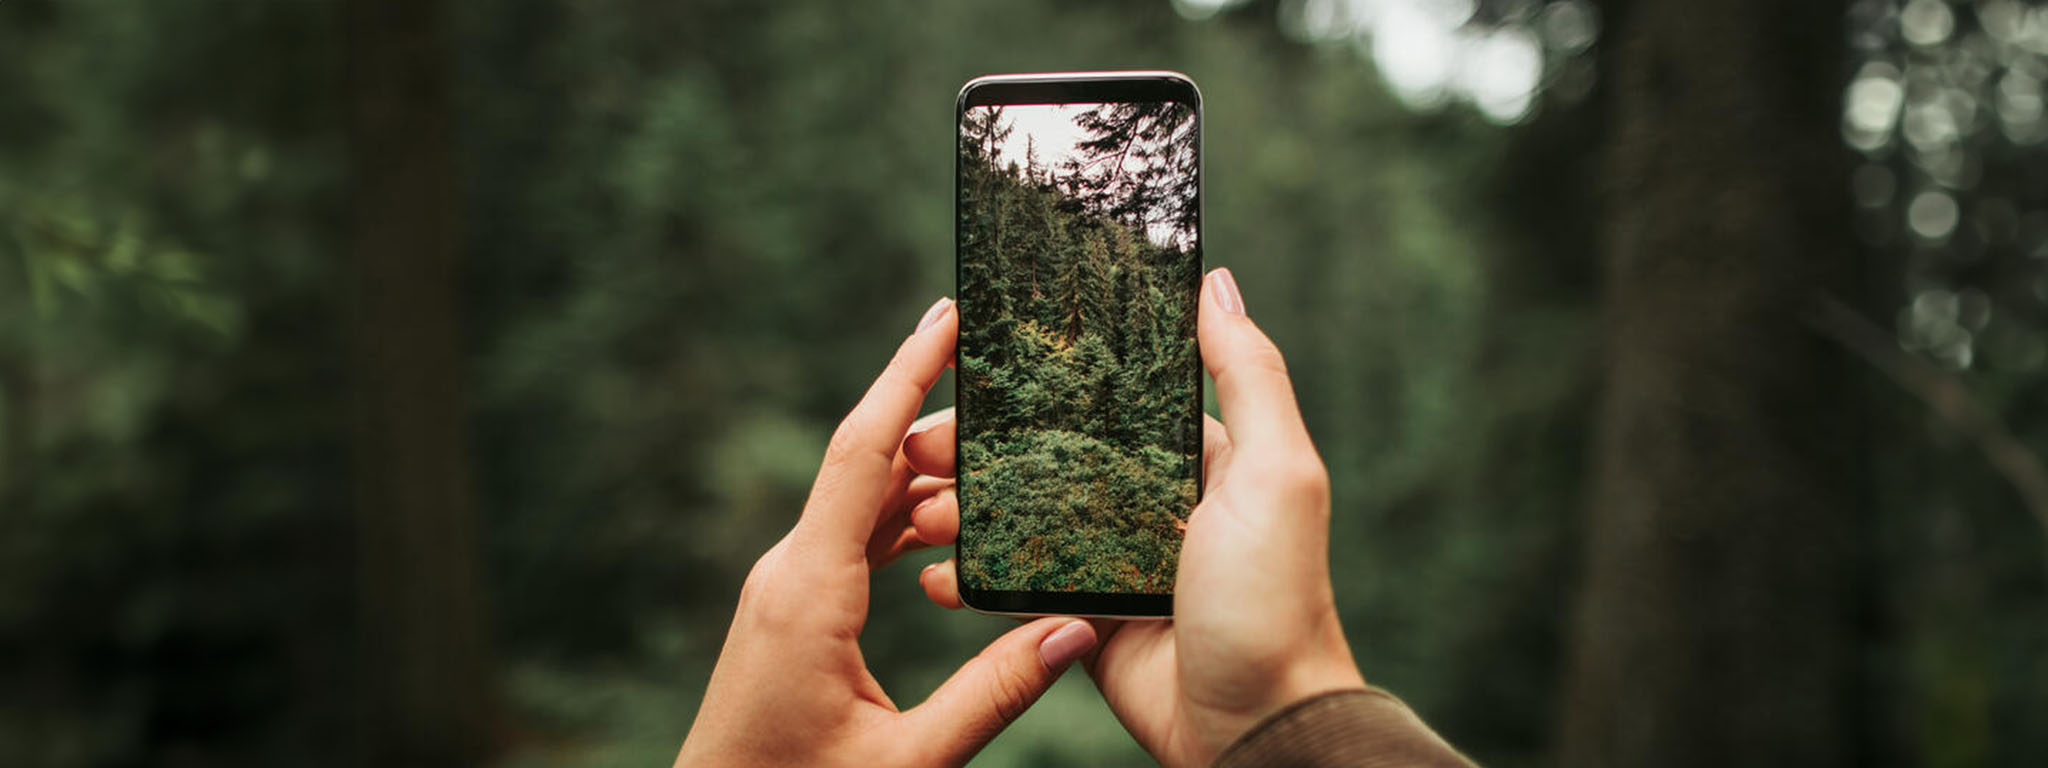 Một người phụ nữ cầm điện thoại đang chụp lại cảnh rừng tuyệt đẹp.